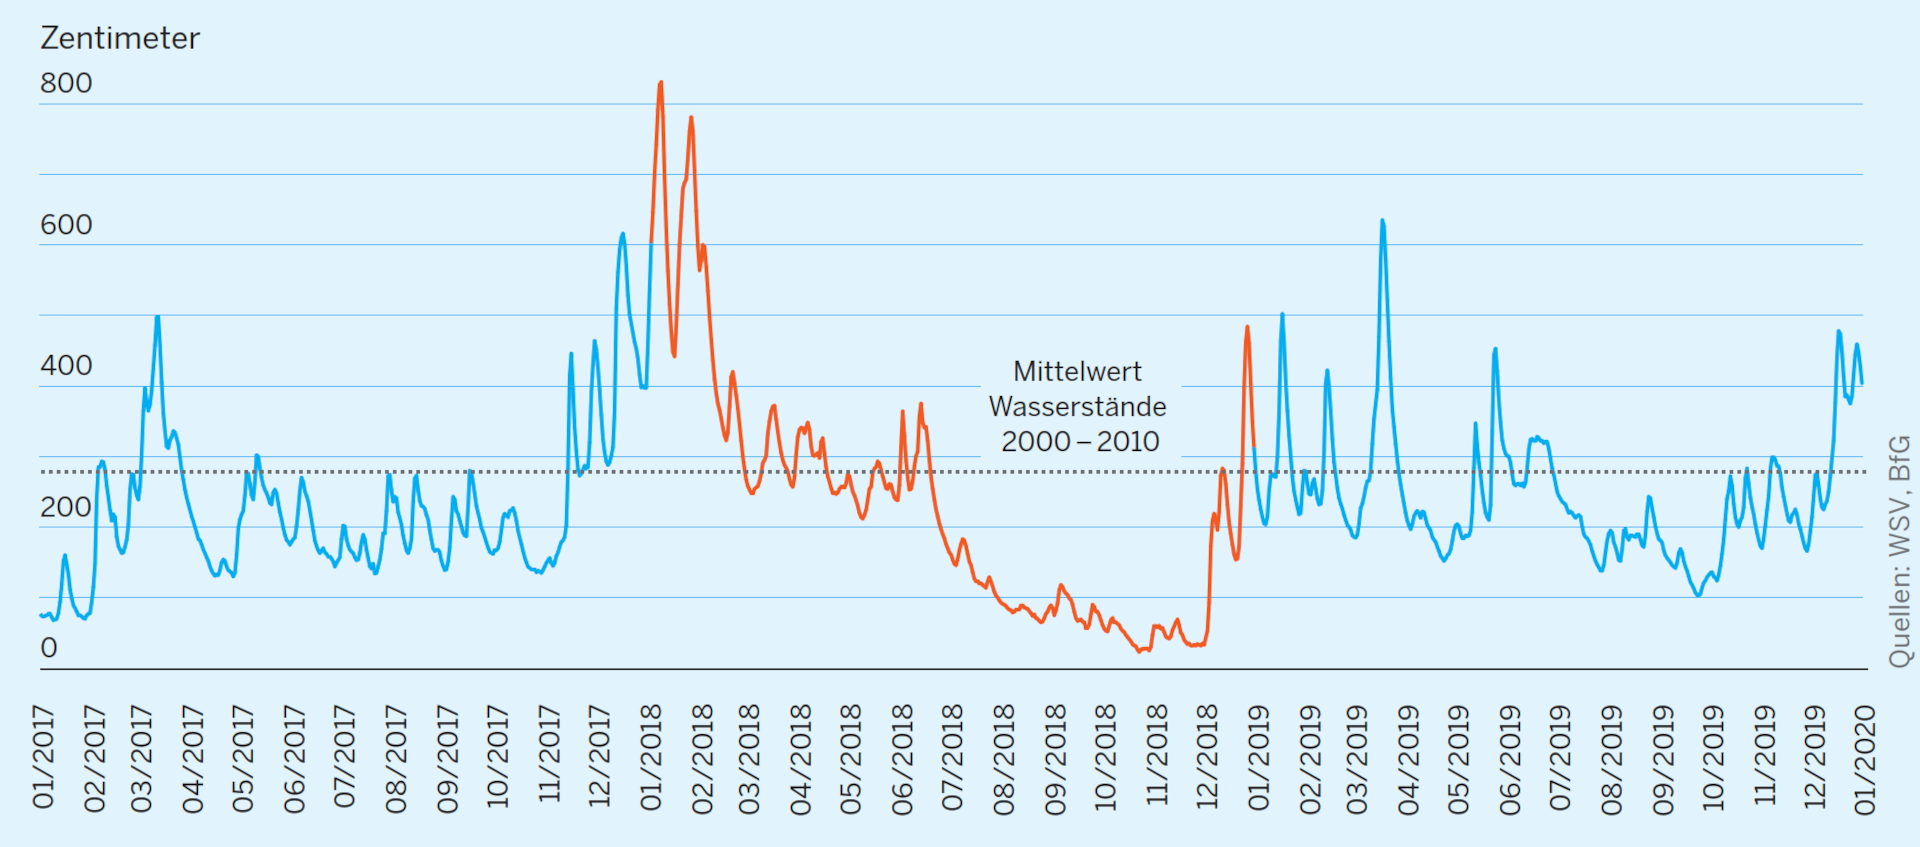 Rheinpegel in Düsseldorf bei Rheinkilometer 744,2 für die Jahre 2017 bis 2019